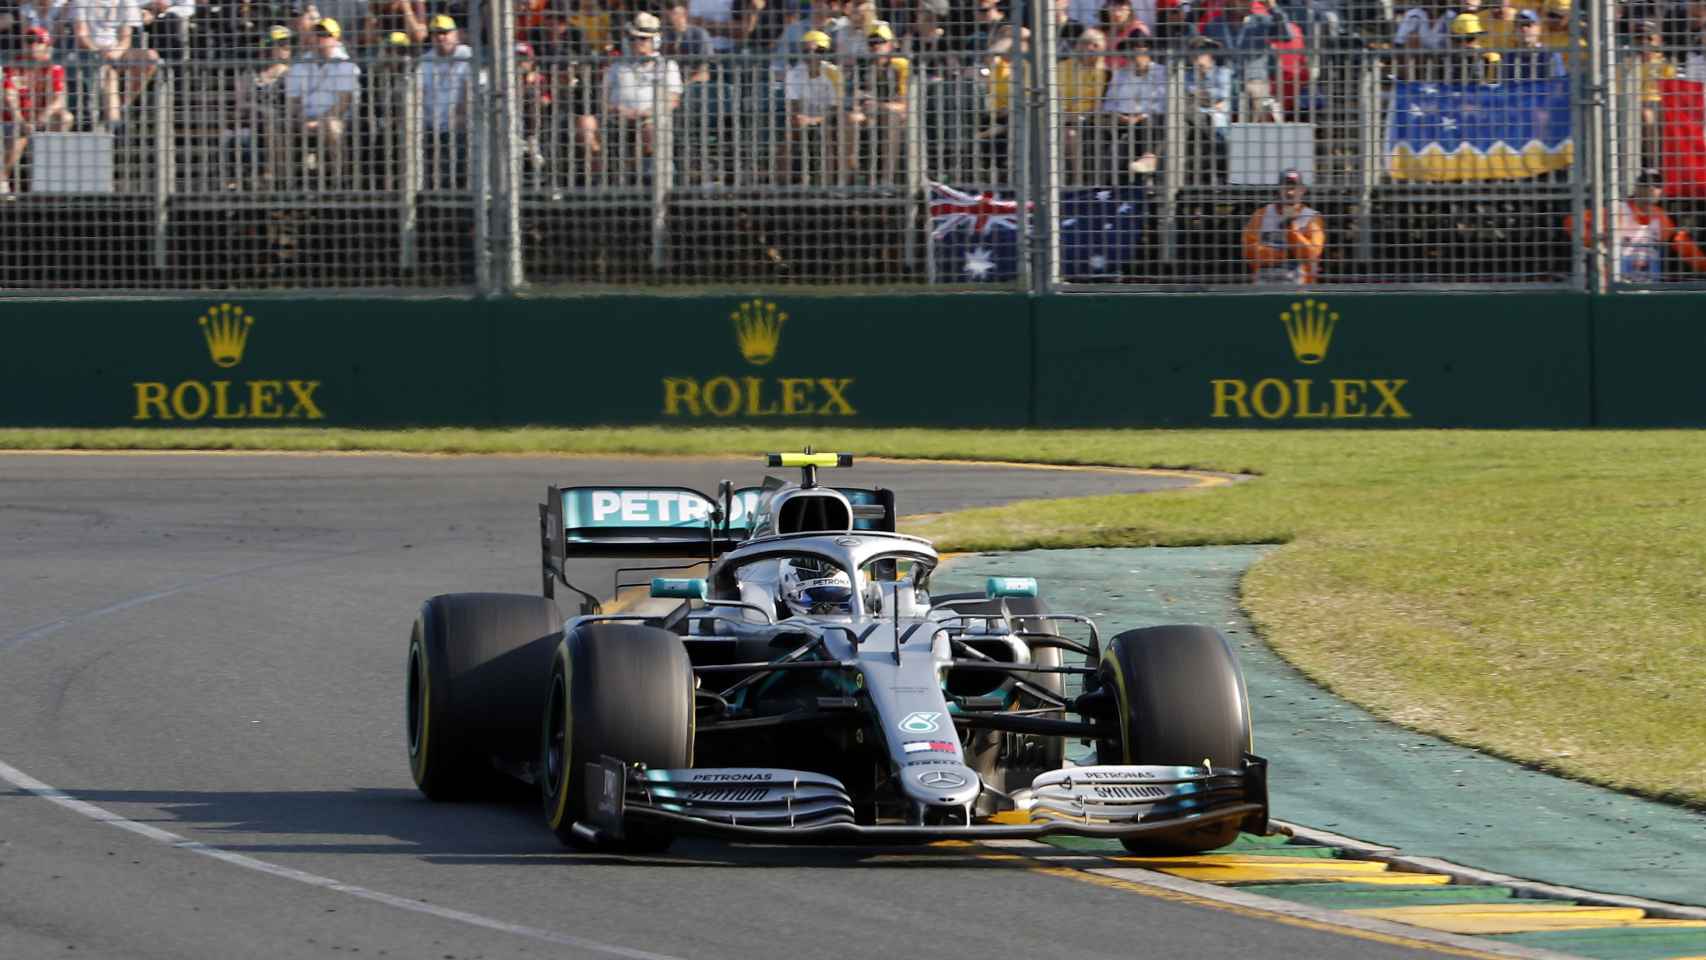 Valtteri Bottas en el Gran Premio de Australia